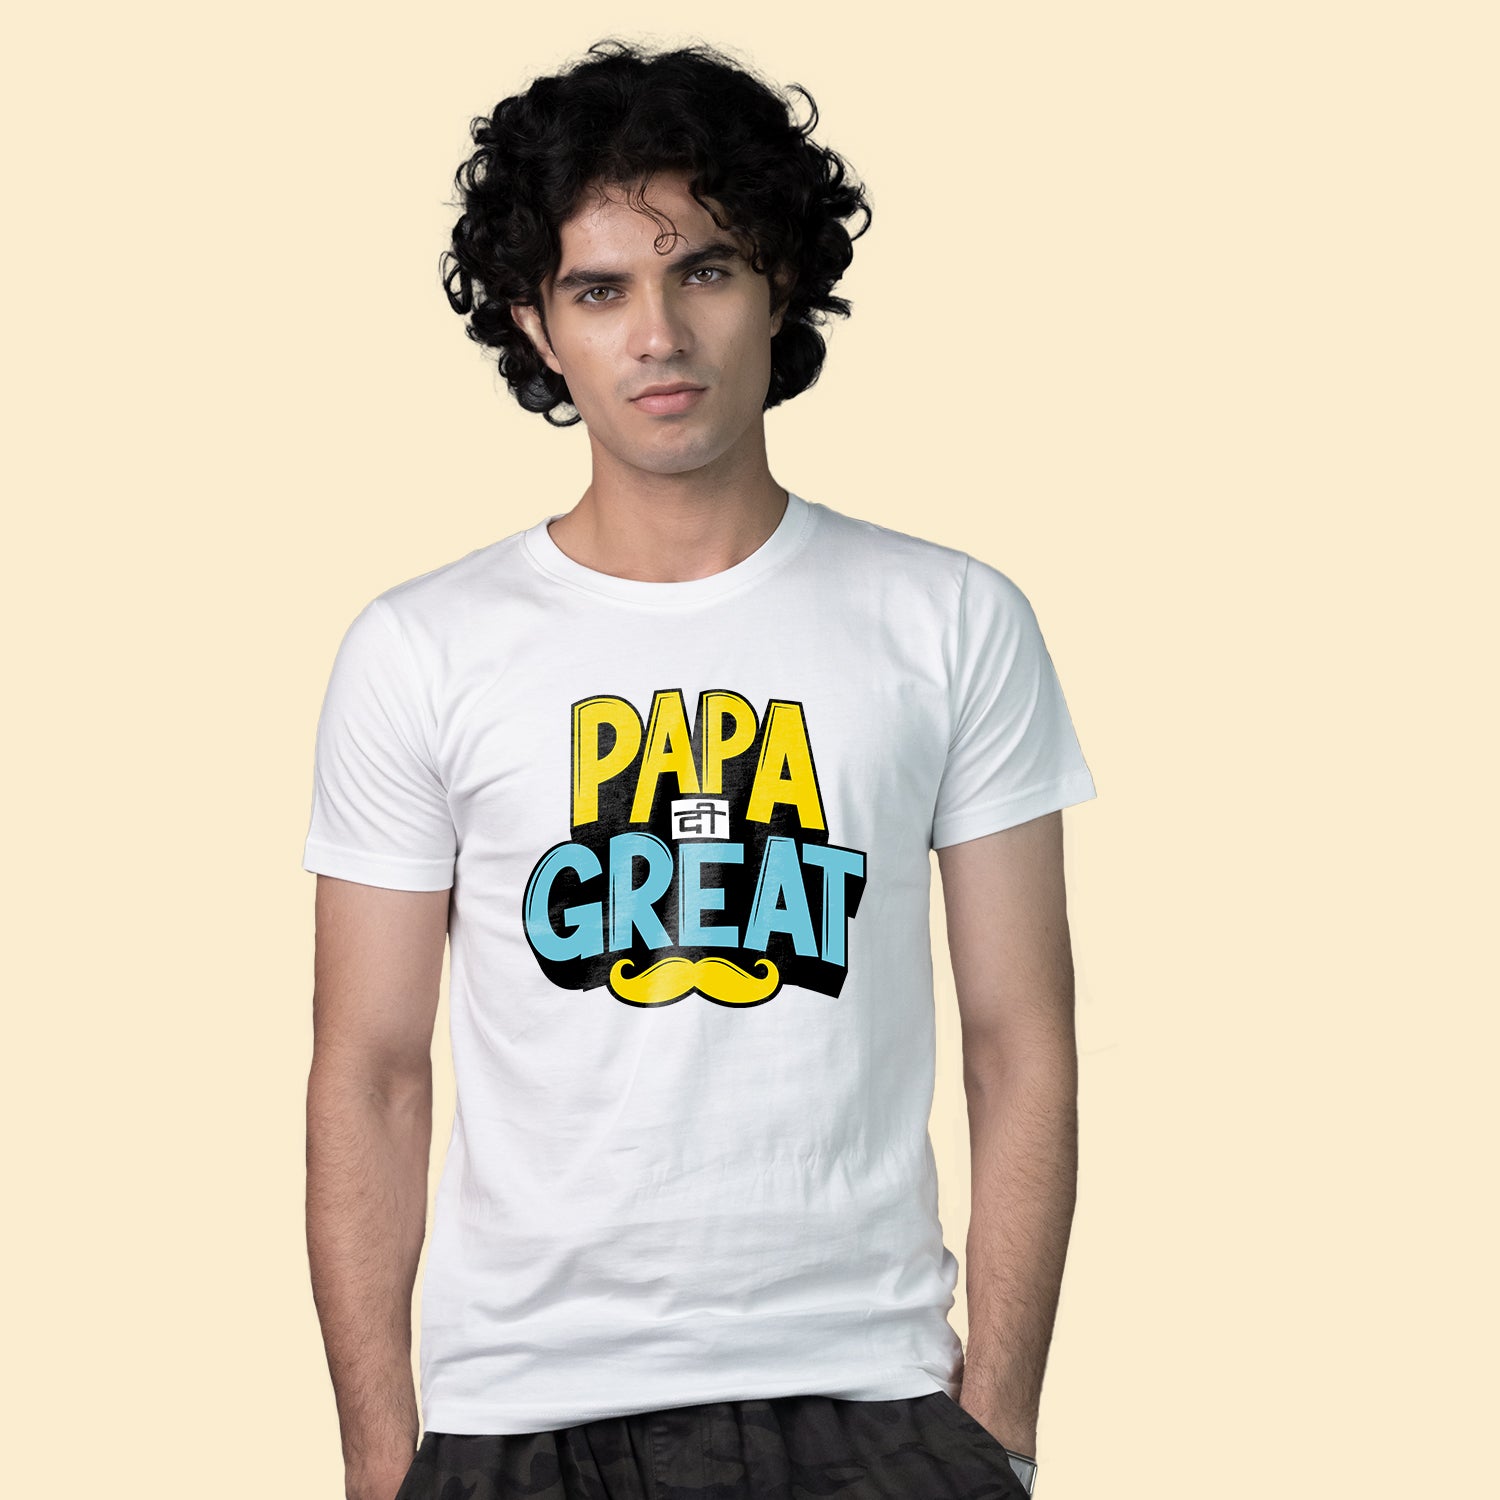 Papa Di Great